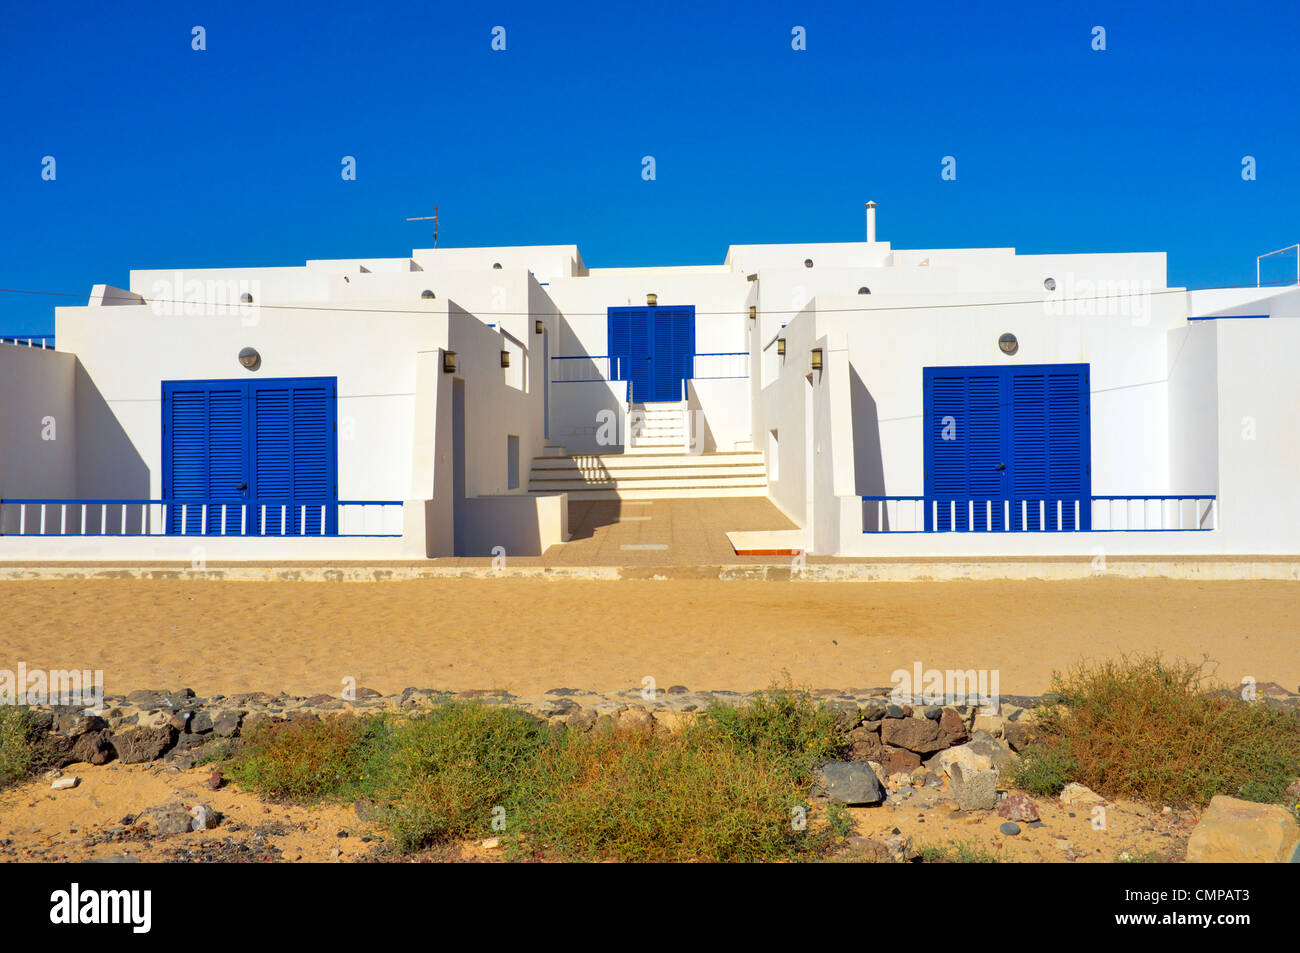 La ville principale de Caleta del Sebo sur l'île de La Graciosa qui se trouve au large de la pointe nord de Lanzarote, îles Canaries, Espagne Banque D'Images